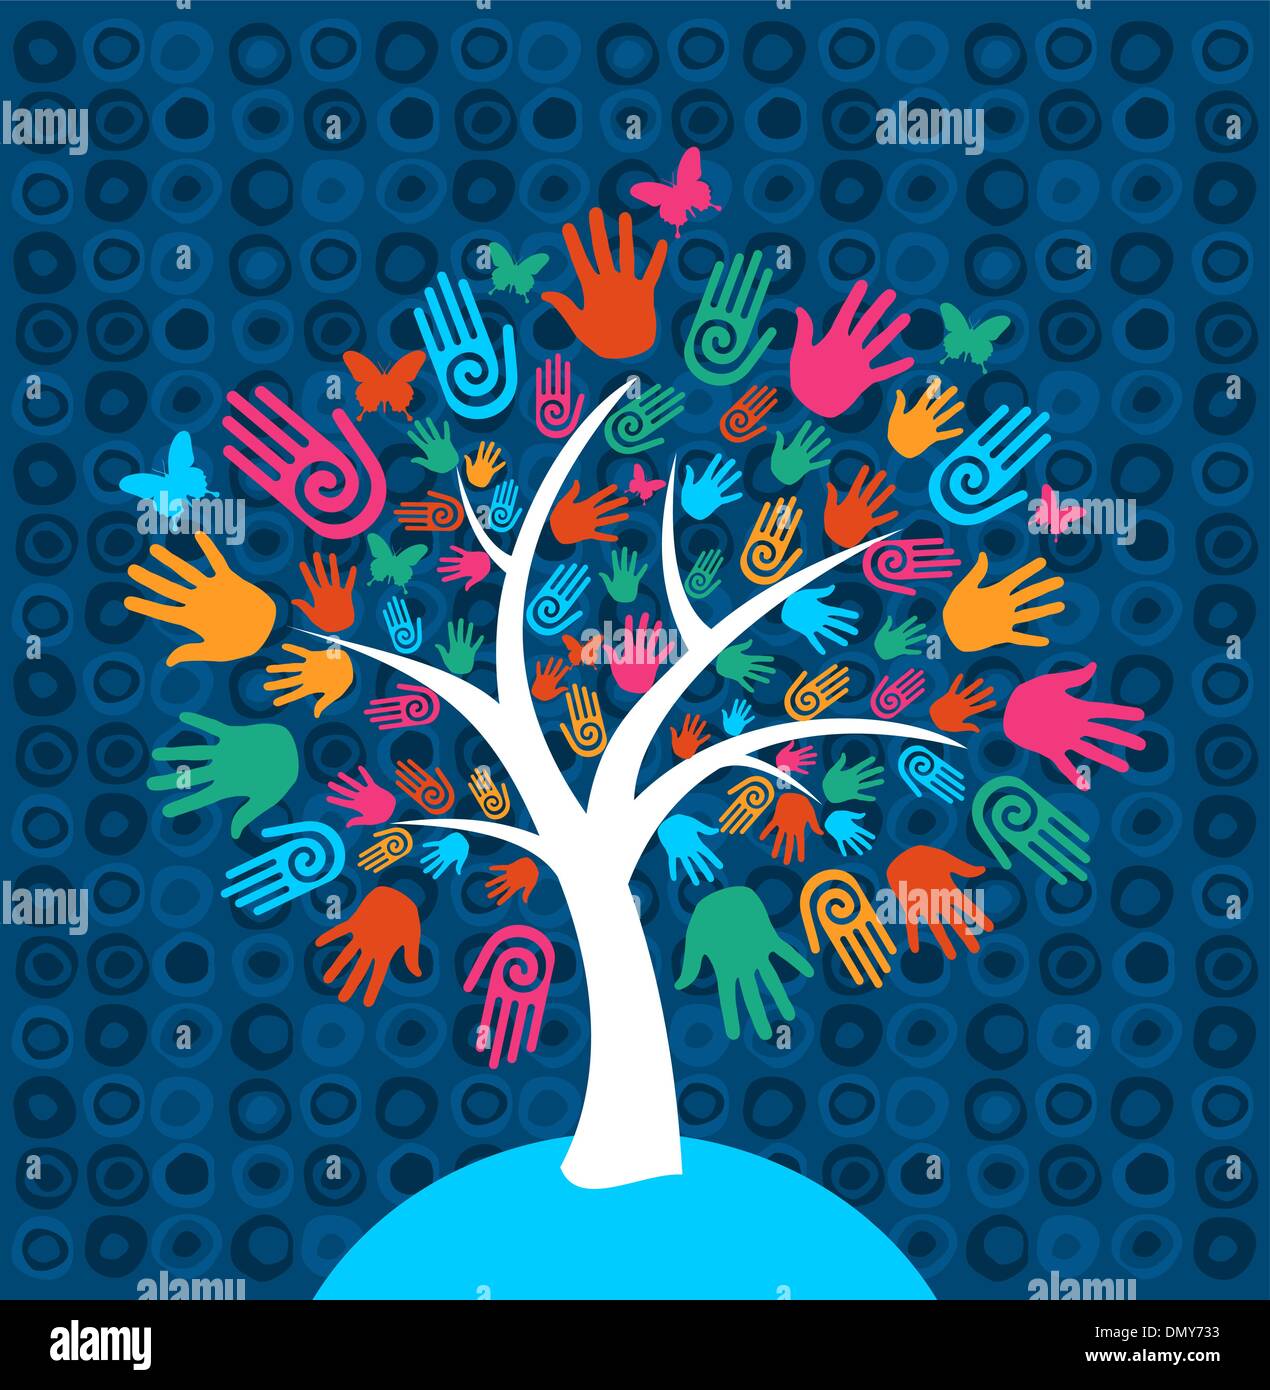 Diversity tree hands background Stock Vector